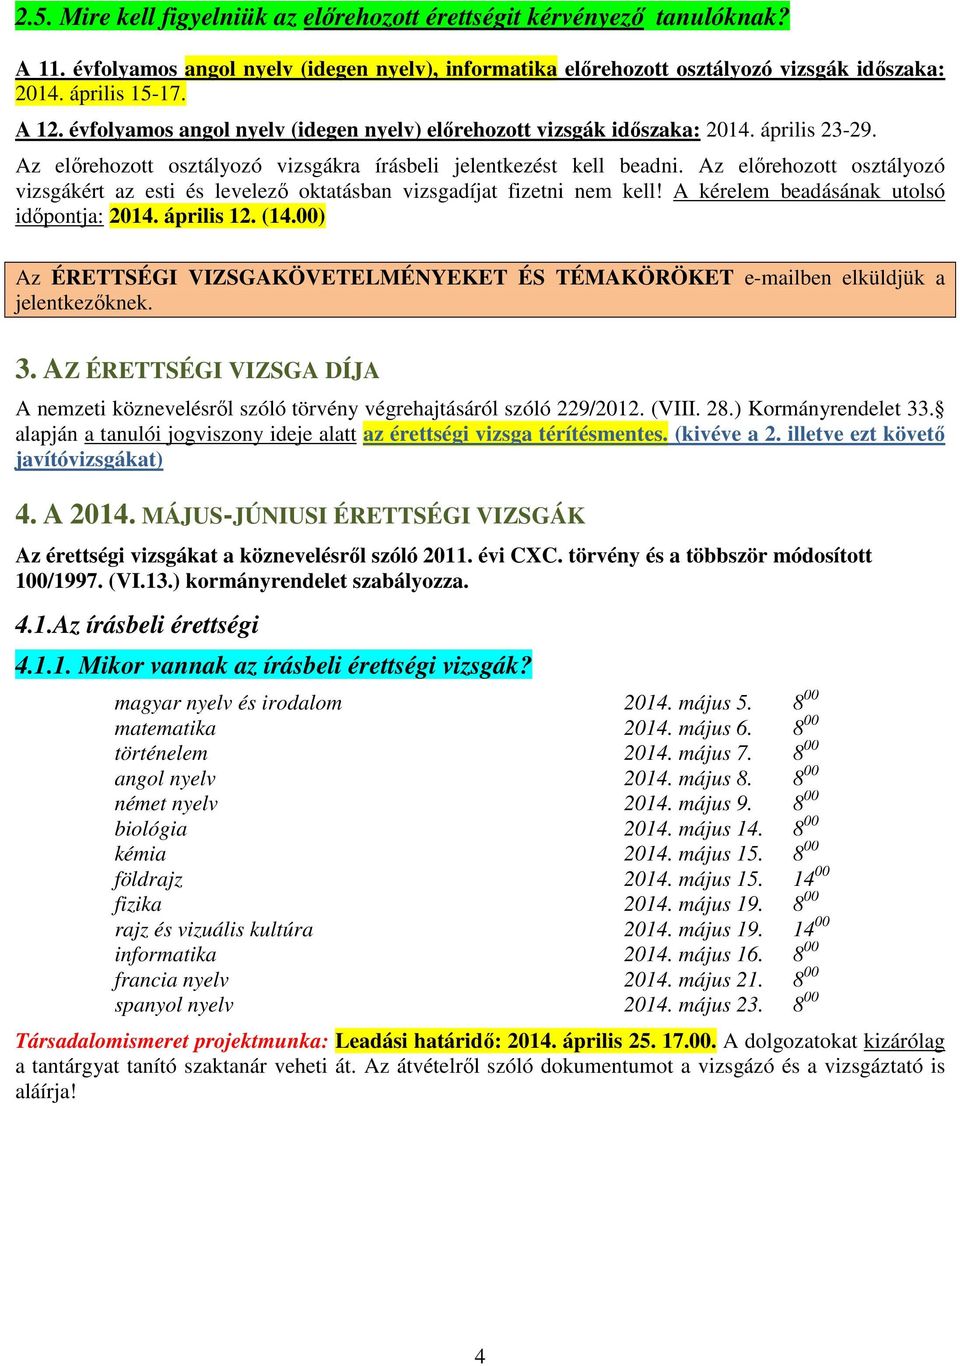 Az előrehozott osztályozó vizsgákért az esti és levelező oktatásban vizsgadíjat fizetni nem kell! A kérelem beadásának utolsó időpontja: 2014. április 12. (14.